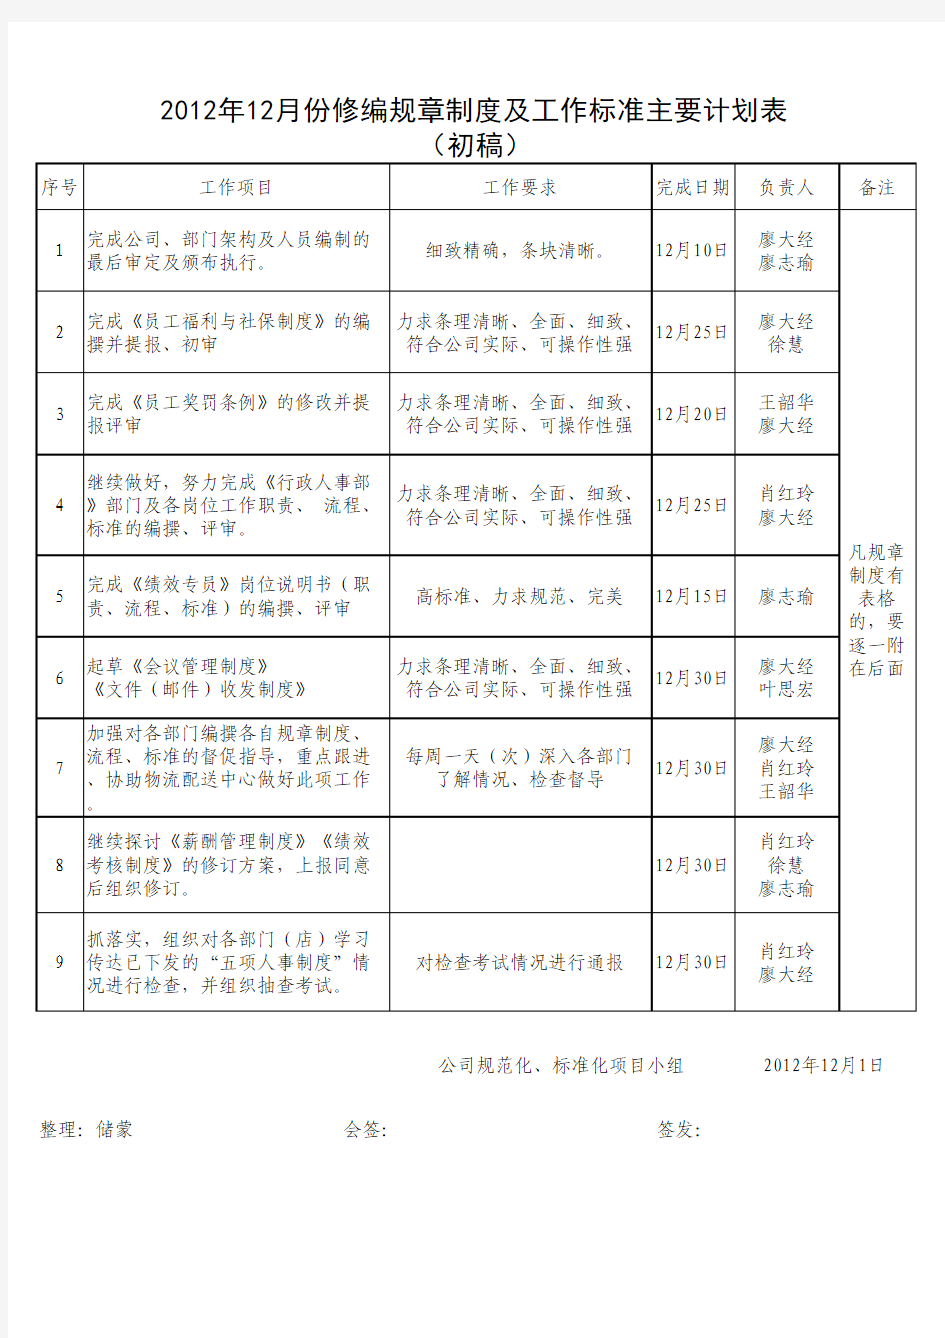 2012年12月份修编规章制度及工作标准主要计划表(初稿)